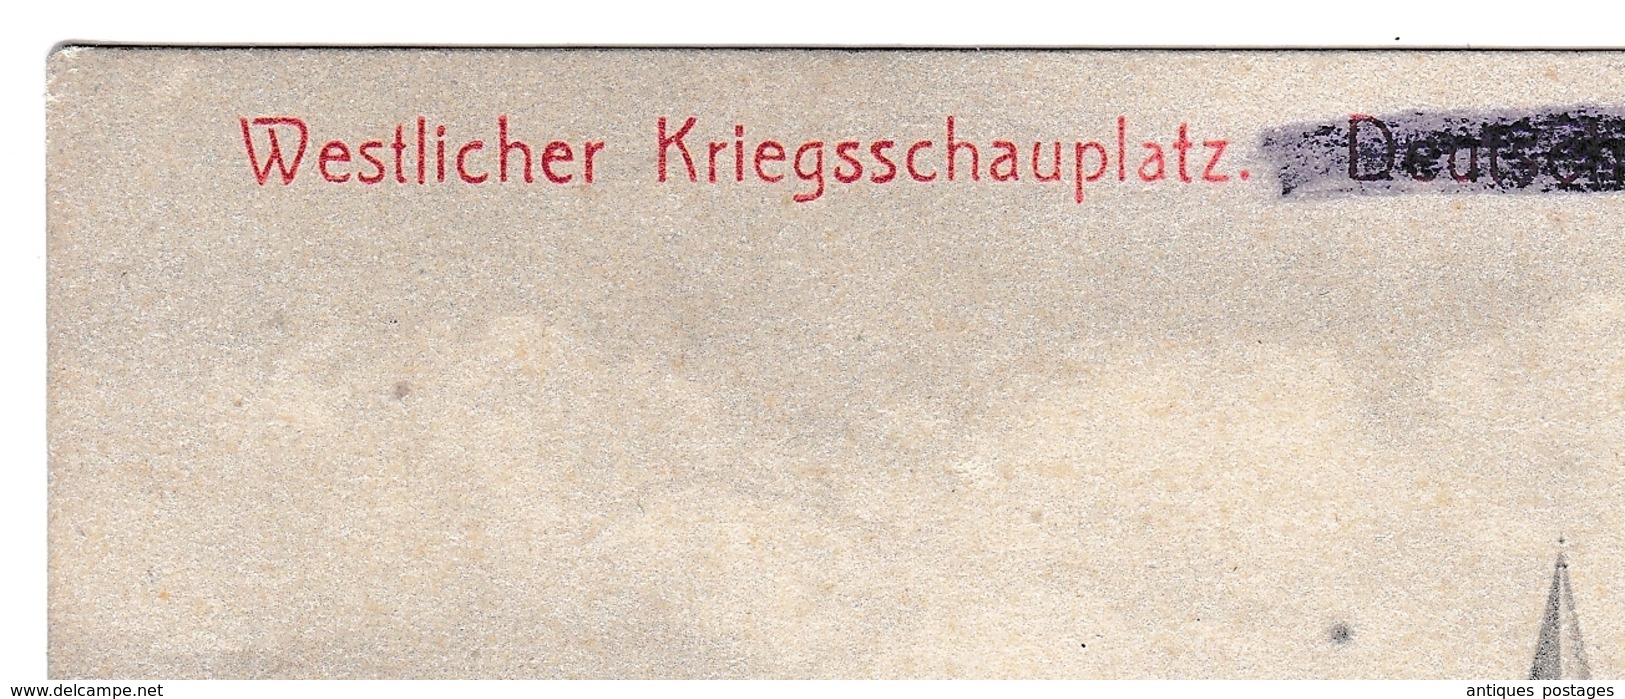 Postkarte Feldpost 1915 Deutschland WW1 Première Guerre Mondiale Westlicher Kriegschauplatz Deutsch-Avricourt Kolonie - Feldpost (Portofreiheit)